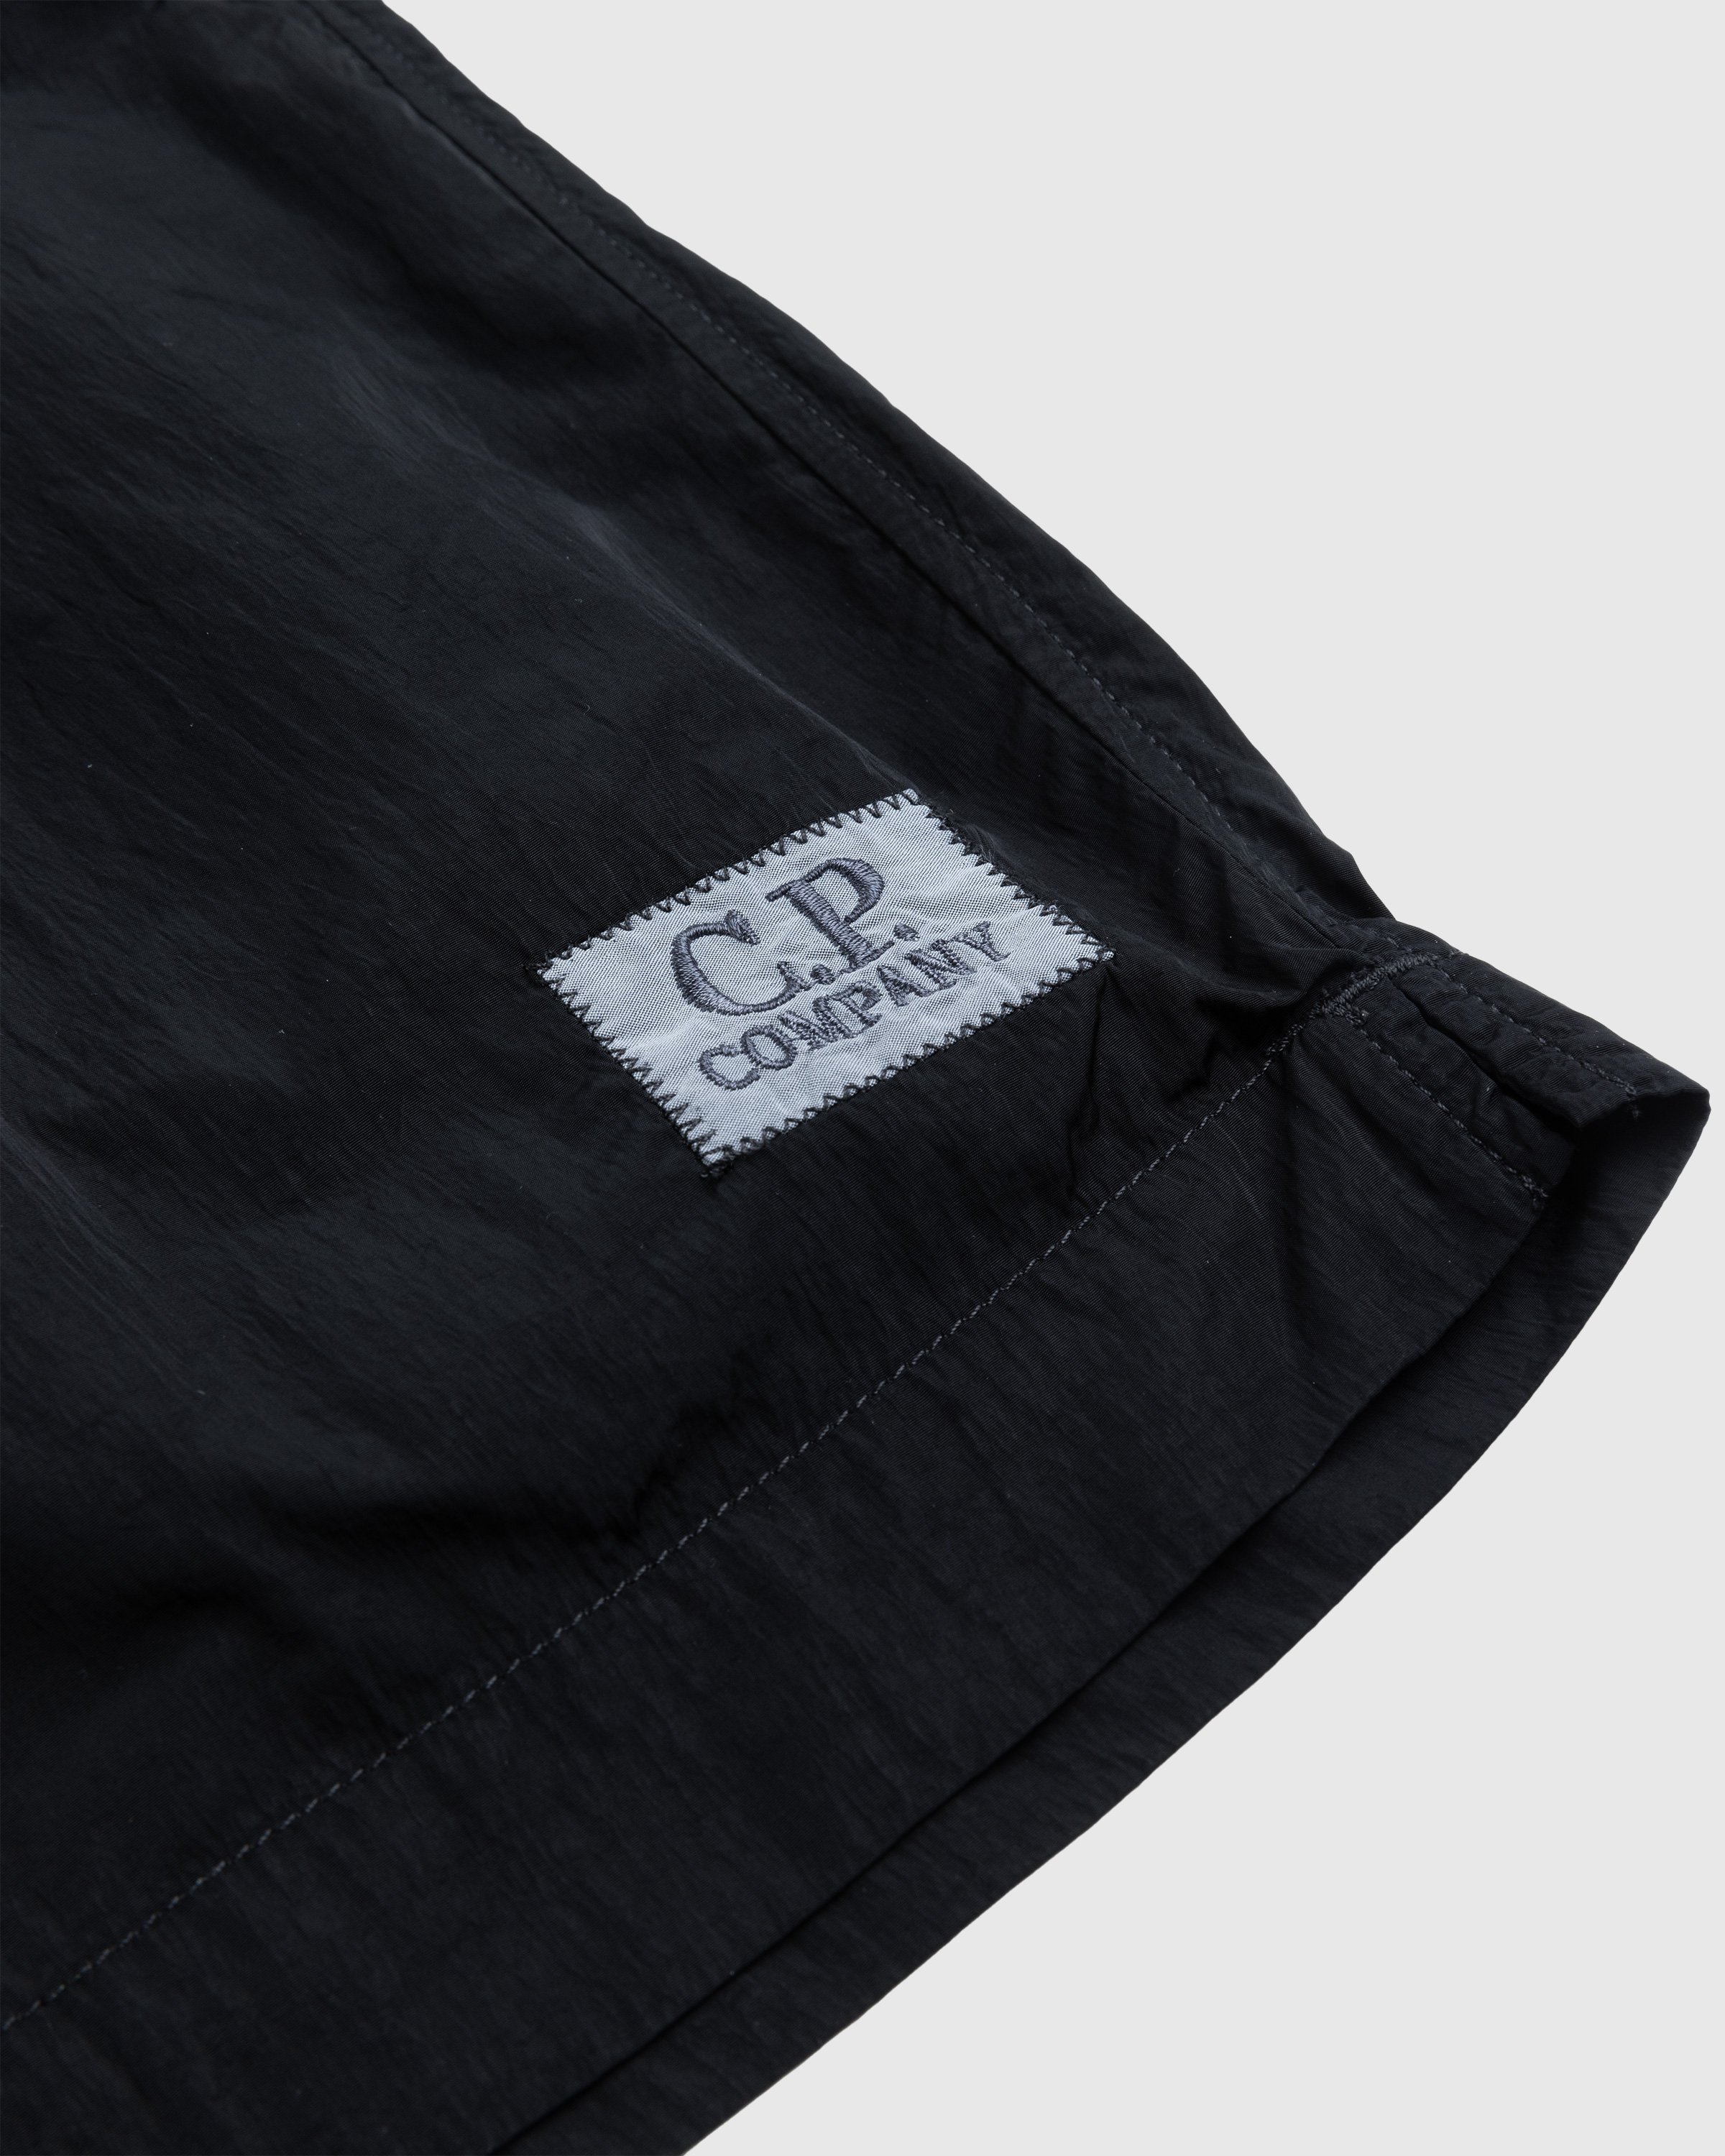 C.P. Company - Eco-Chrome Swim Shorts Black - Clothing - Black - Image 6